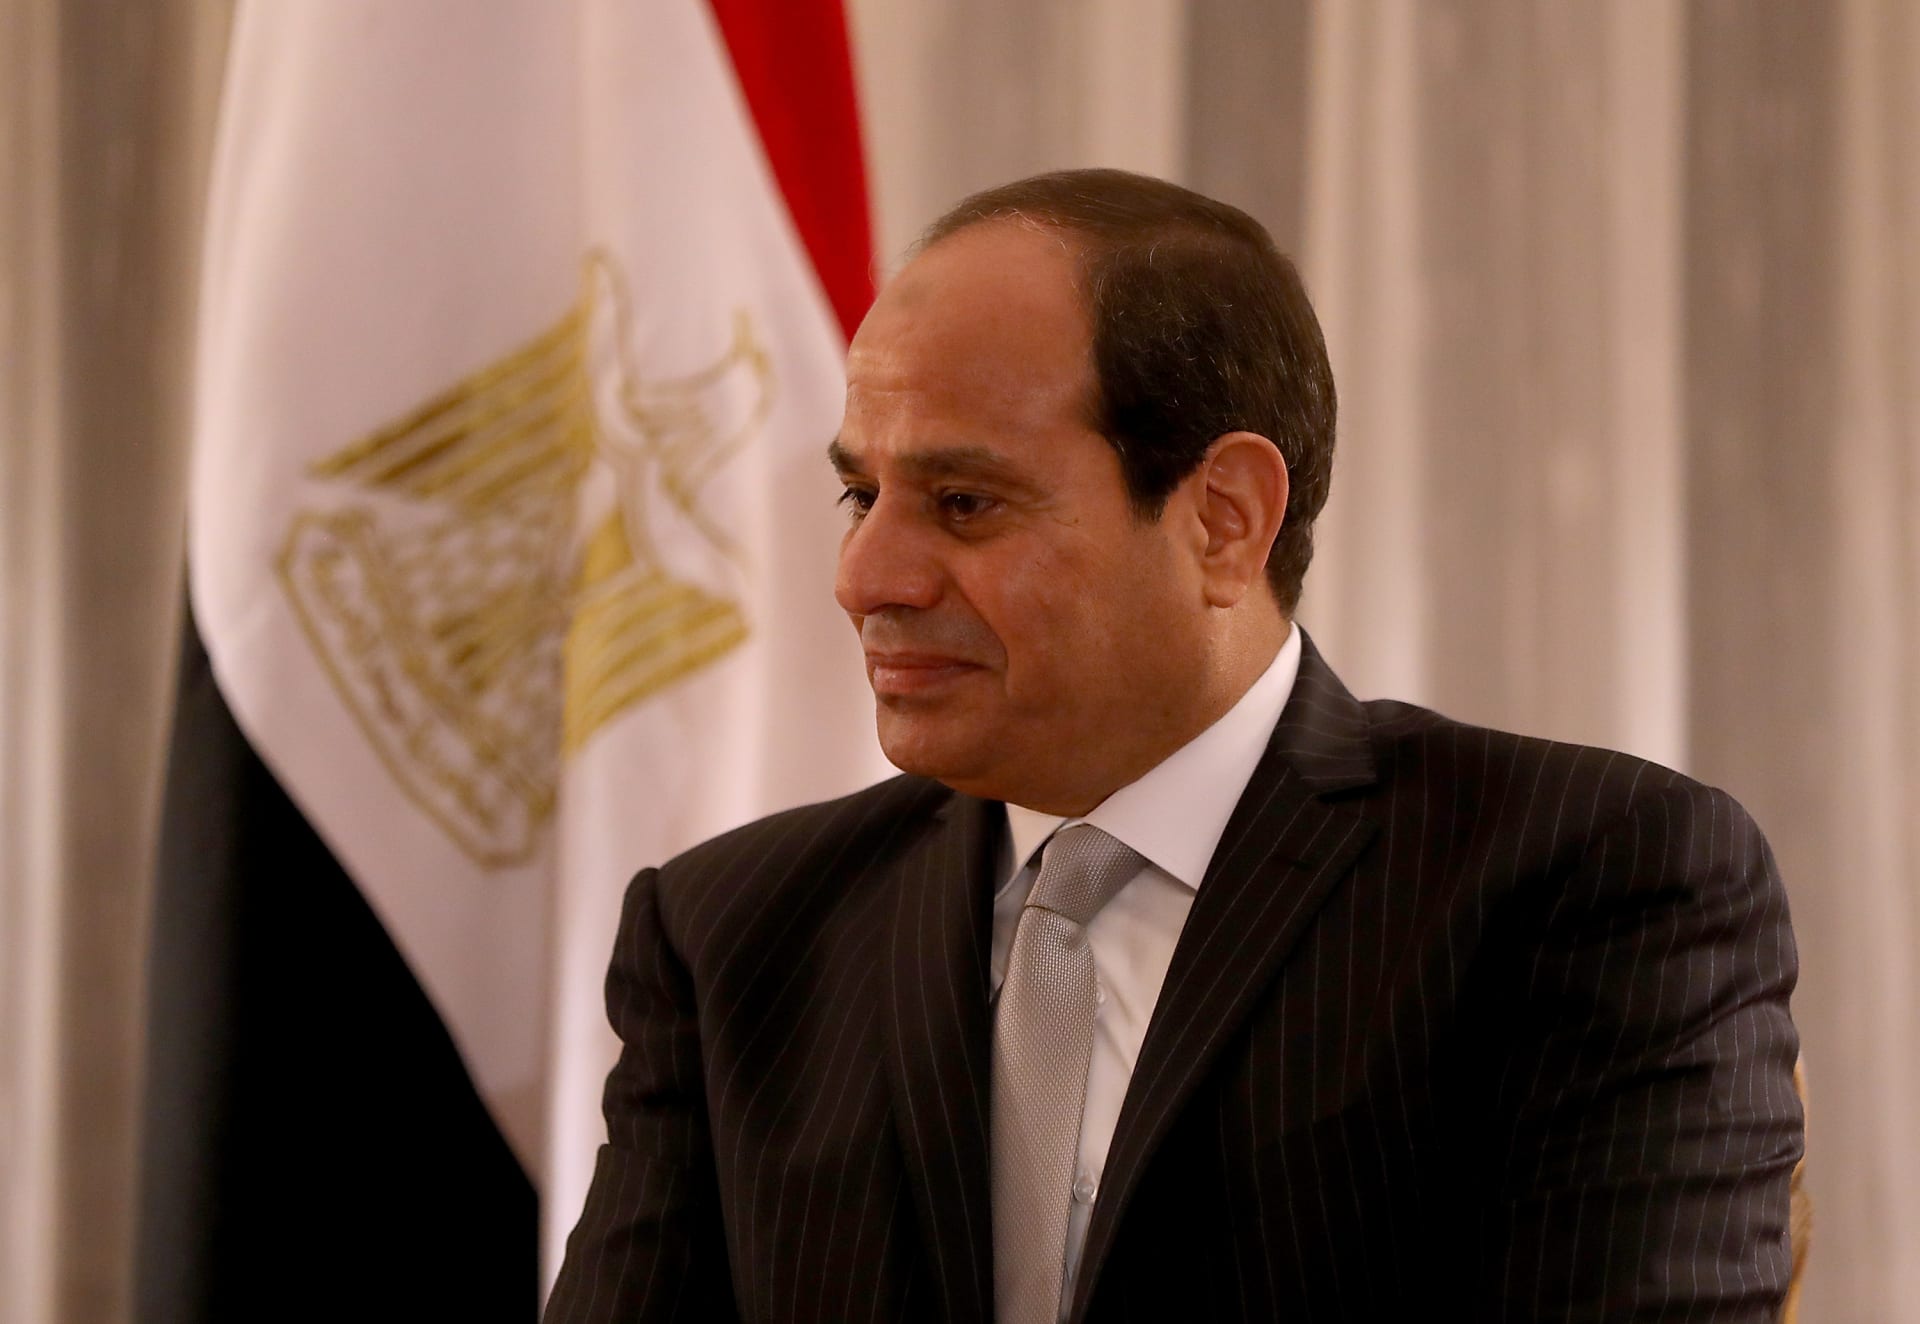 مجلس النواب المصري يعلن موقفه من التدخل العسكري في ليبيا.. وأحد أعضائه: "وقفنا تحية للقائد العام" 